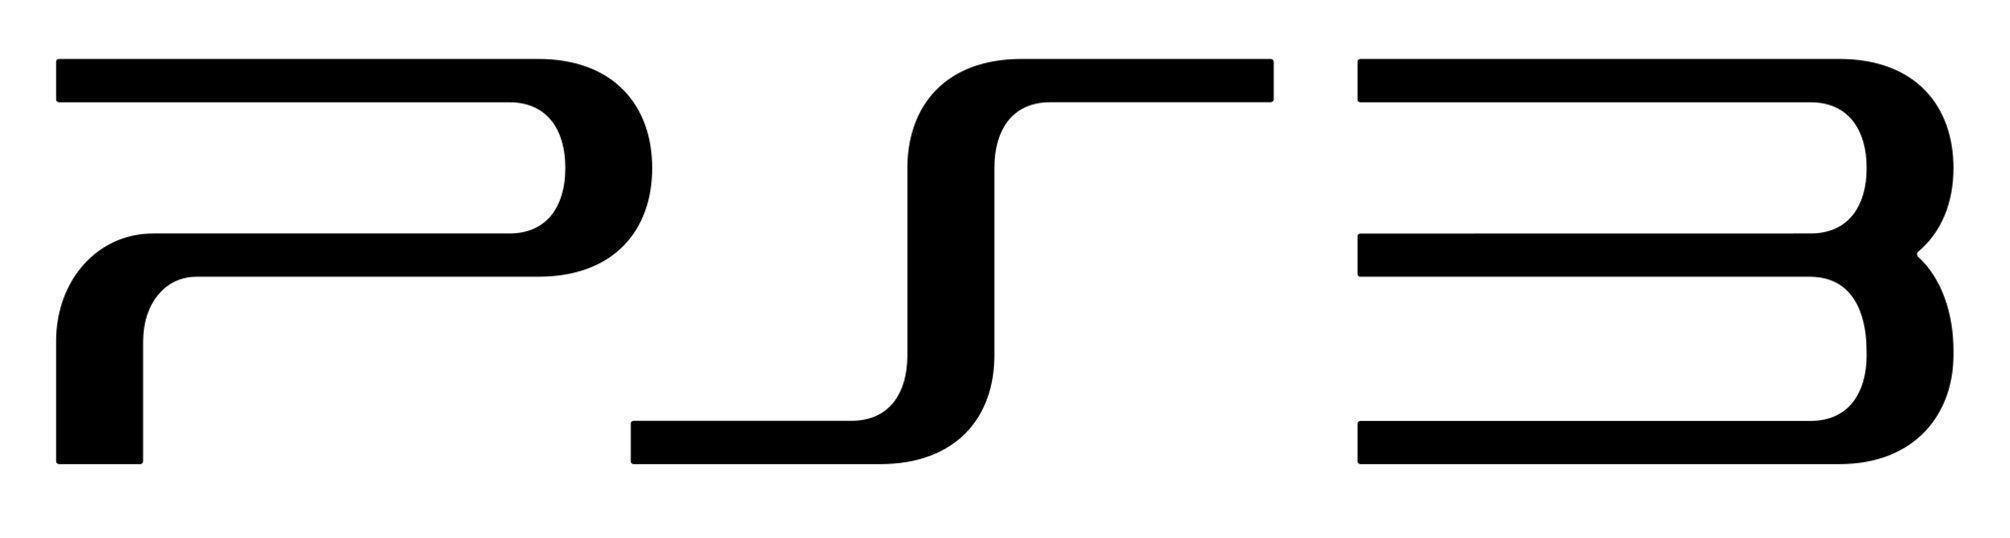 PlayStation 3 Logo playstation 3 logo wallpaper